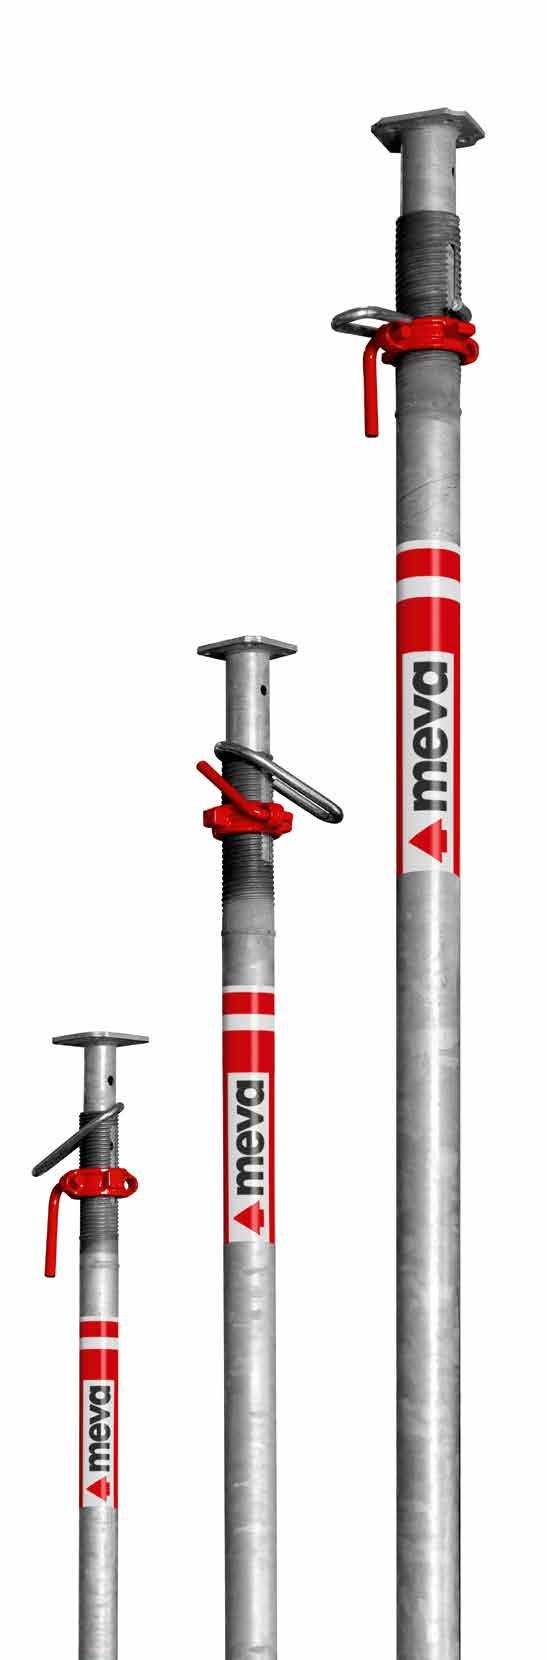 Sicher abgestützt EuMax Baustützen Auszugslängen von 98 cm bis 550 cm EuMax ist das starke, umfassende